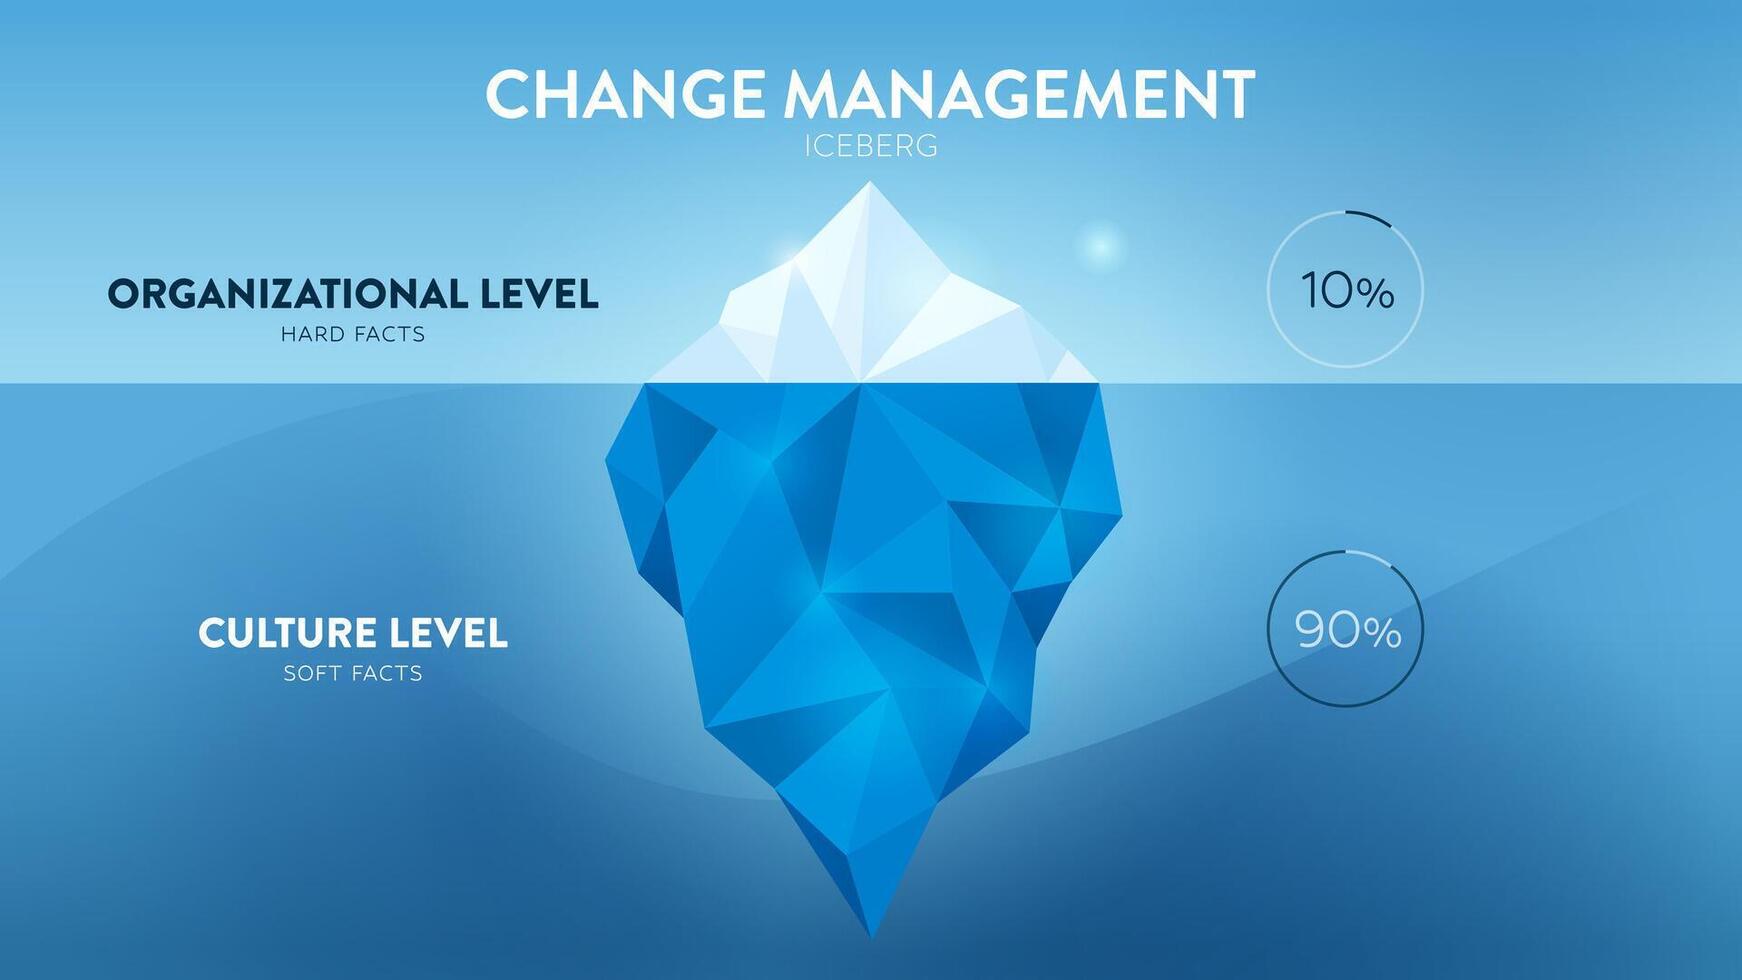 iceberg modelo do mudança gestão vetor ilustração é 90 suave facto cultura nível escondido embaixo da agua e 10 Difícil facto organização nível. a infográfico é para humano recurso gestão estratégia.